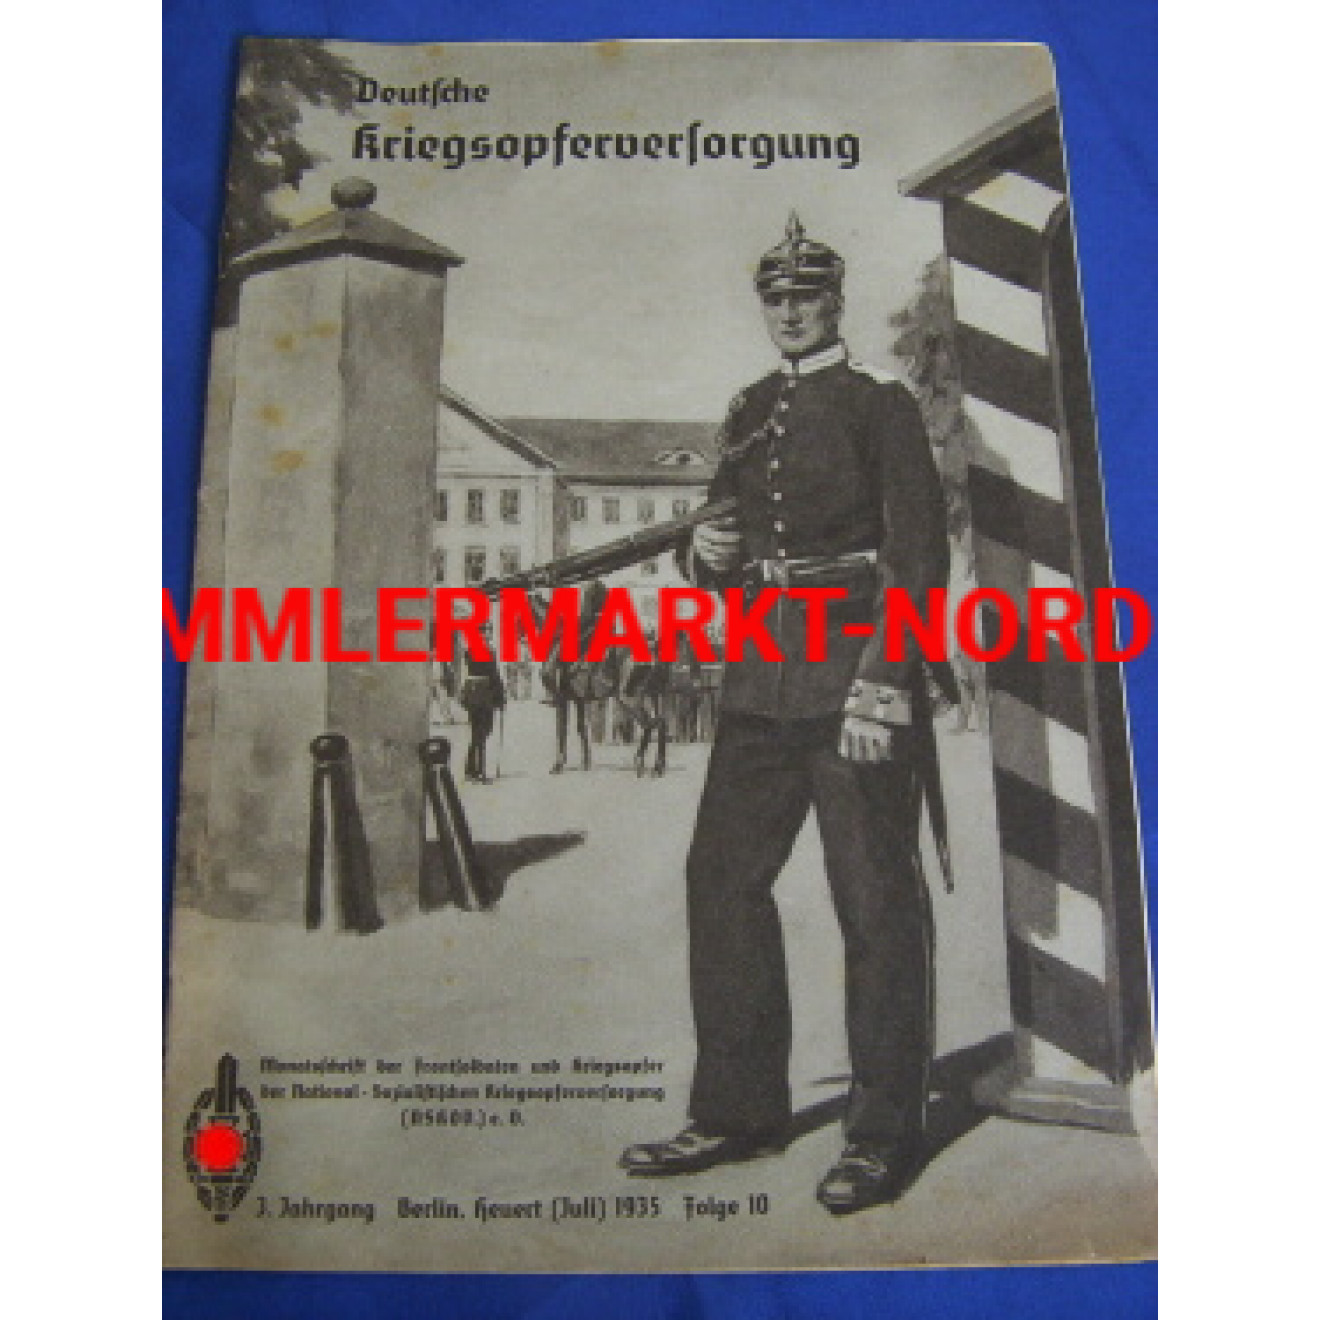 NSKOV Deutsche Kriegsopferversorgung, July 1935